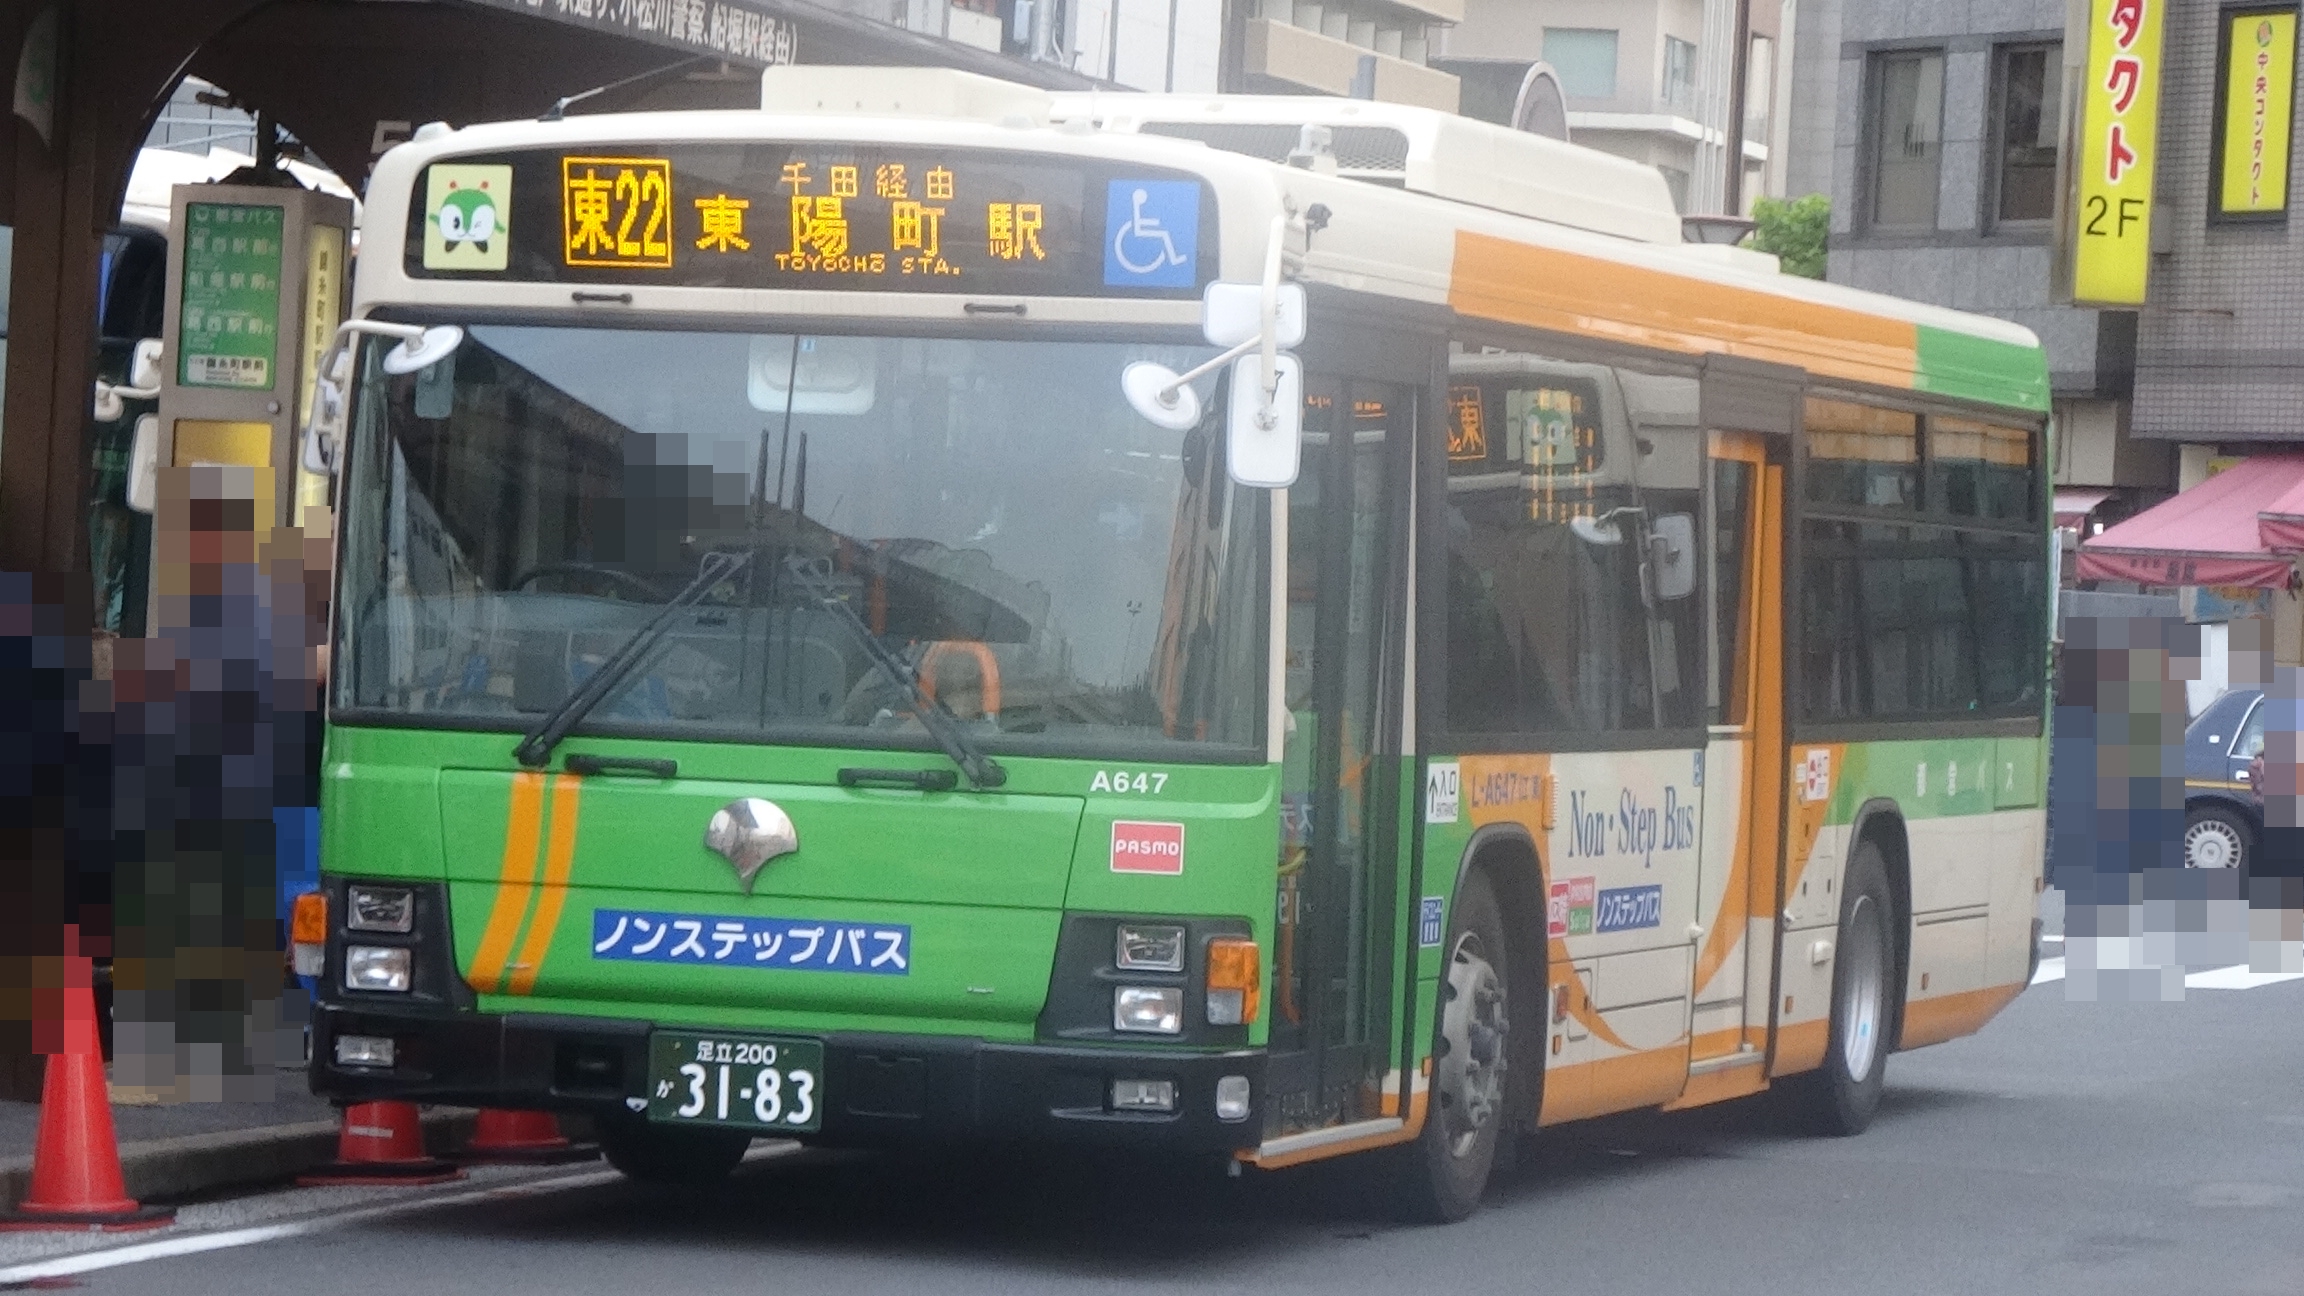 乗り物と旅行のblog 更新停止 都営バス L A647 いすゞ自動車 エルガ J Bus